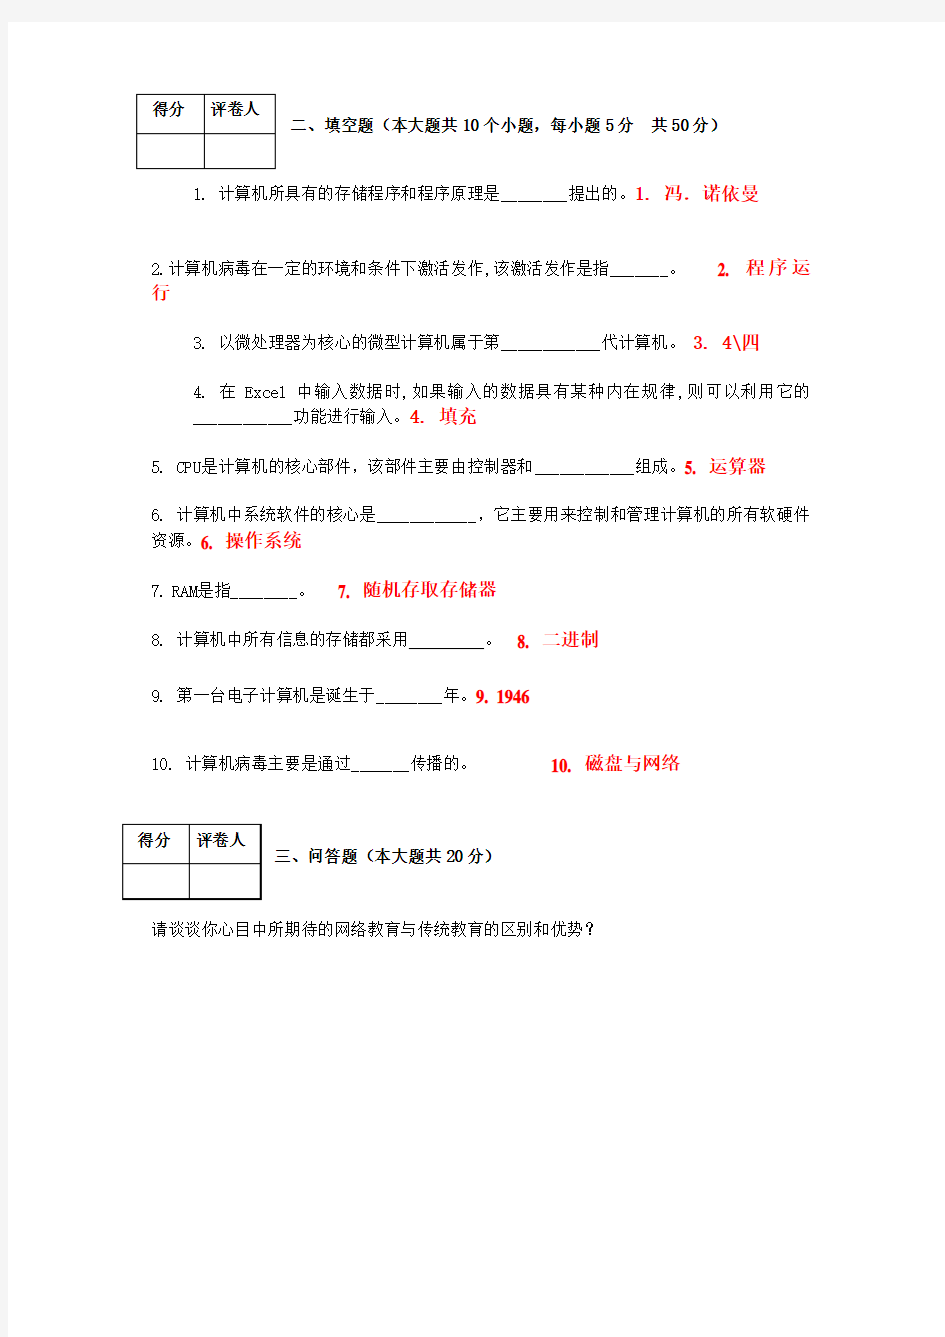 重庆大学入学考试资料计算机应用基础一(本科入学考试模拟题)